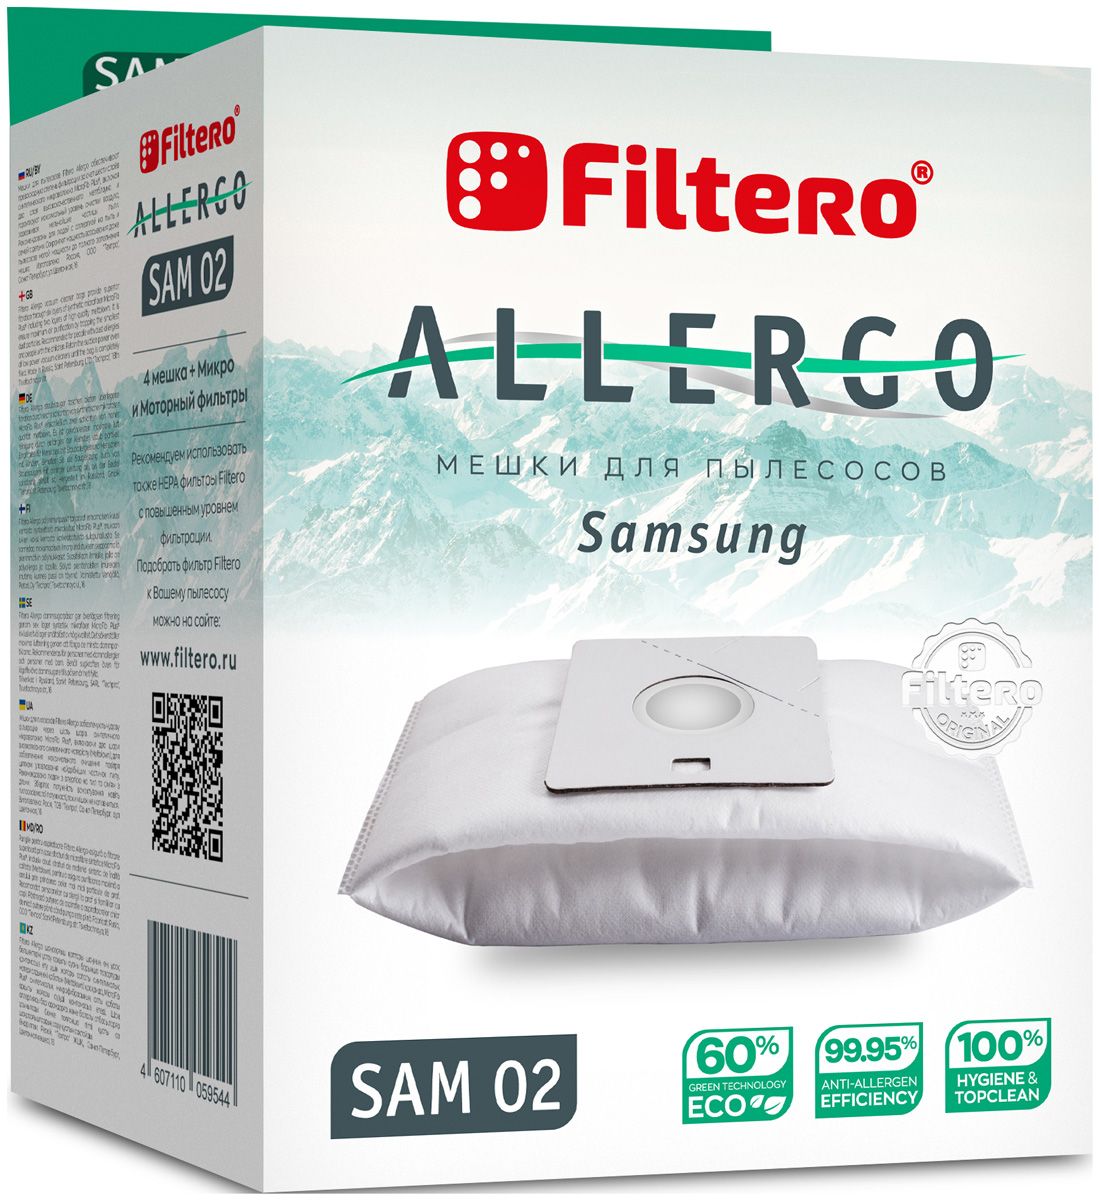 Пылесборники Filtero SAM 02 Allergo 4 шт. + моторный фильтр и микрофильтр цена и фото